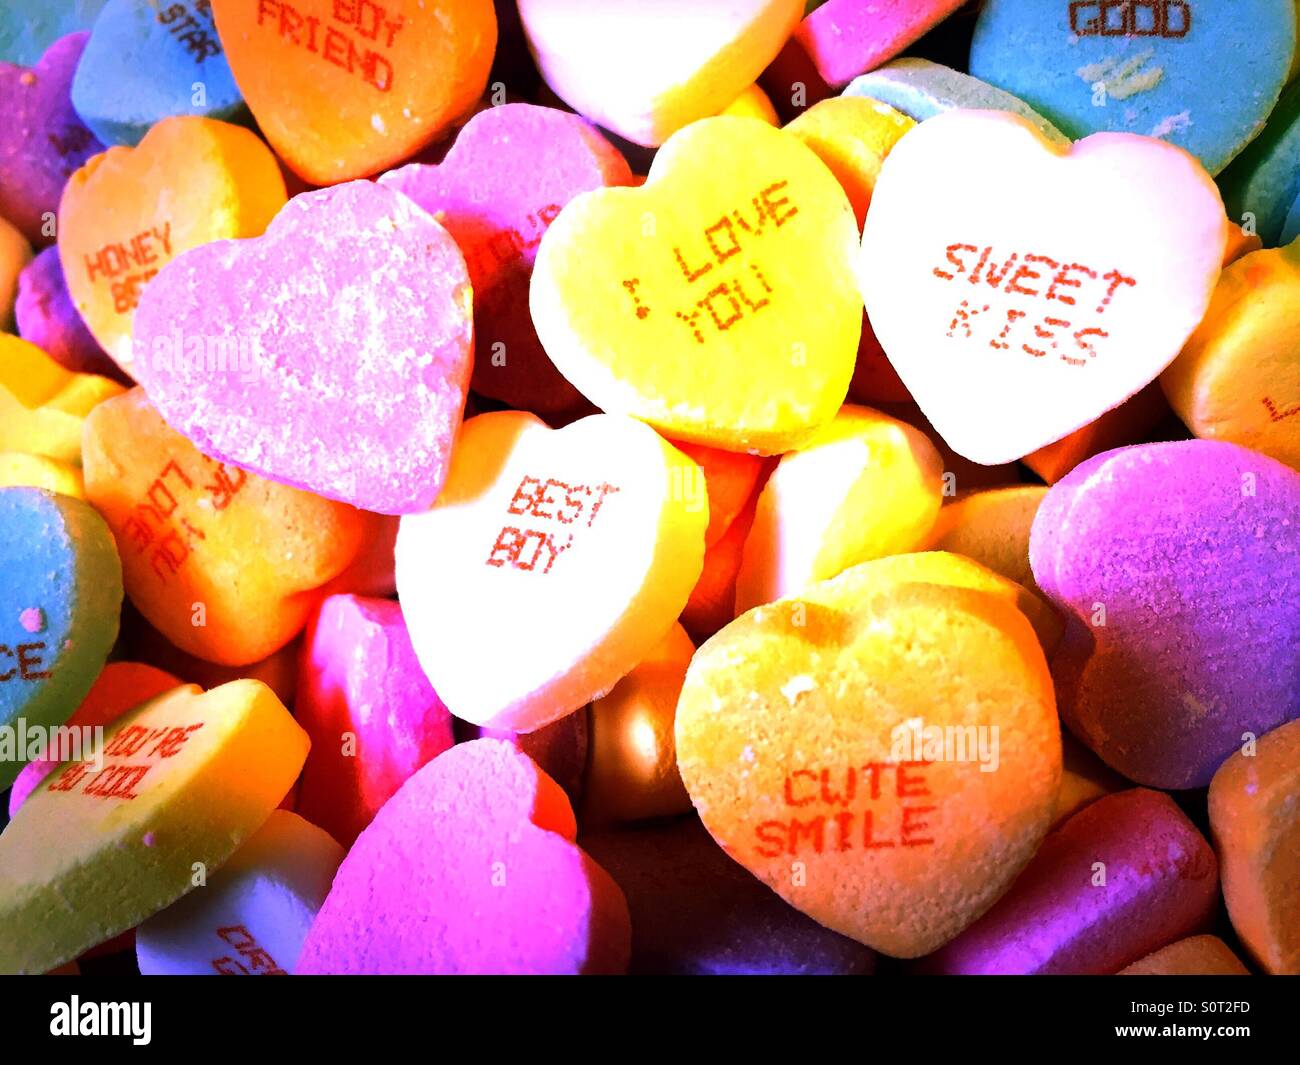 Saint-valentin bonbons coeurs de conversation dans des couleurs vives. Banque D'Images